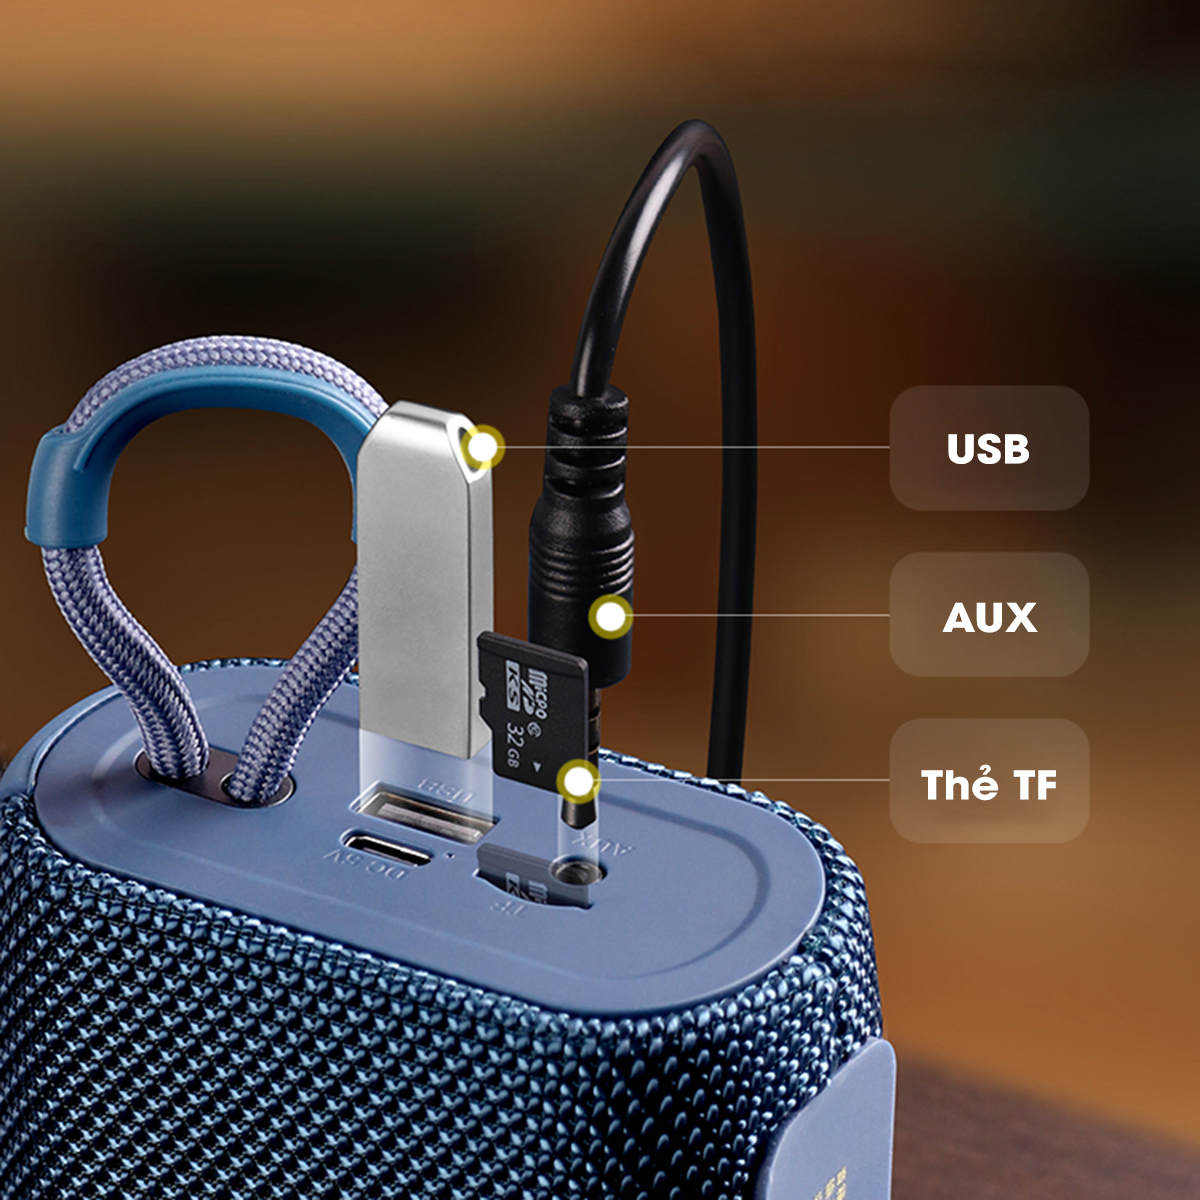 Loa bluetooth mini Remax RB M17 Loa nghe nhạc không dây kèm tai nghe bluetooth pin trâu hỗ trợ thẻ nhớ TF USB cổng AUX - Hàng Chính Hãng Remax Bảo Hành 12 Tháng